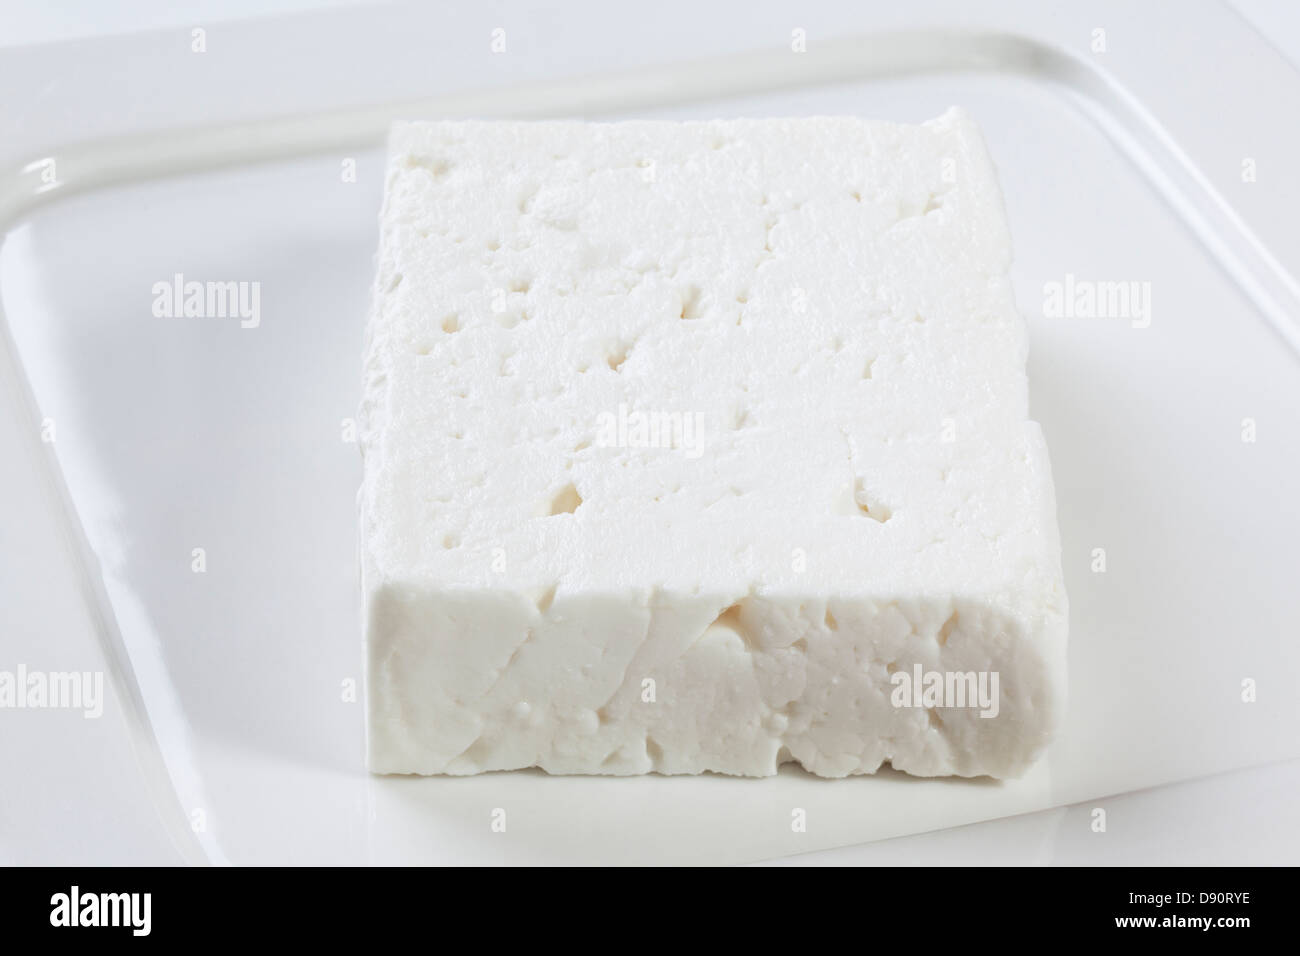 Le fromage feta - un bloc de fromage feta grecque authentique, fabriqué à partir de lait de chèvre et brebis. Banque D'Images